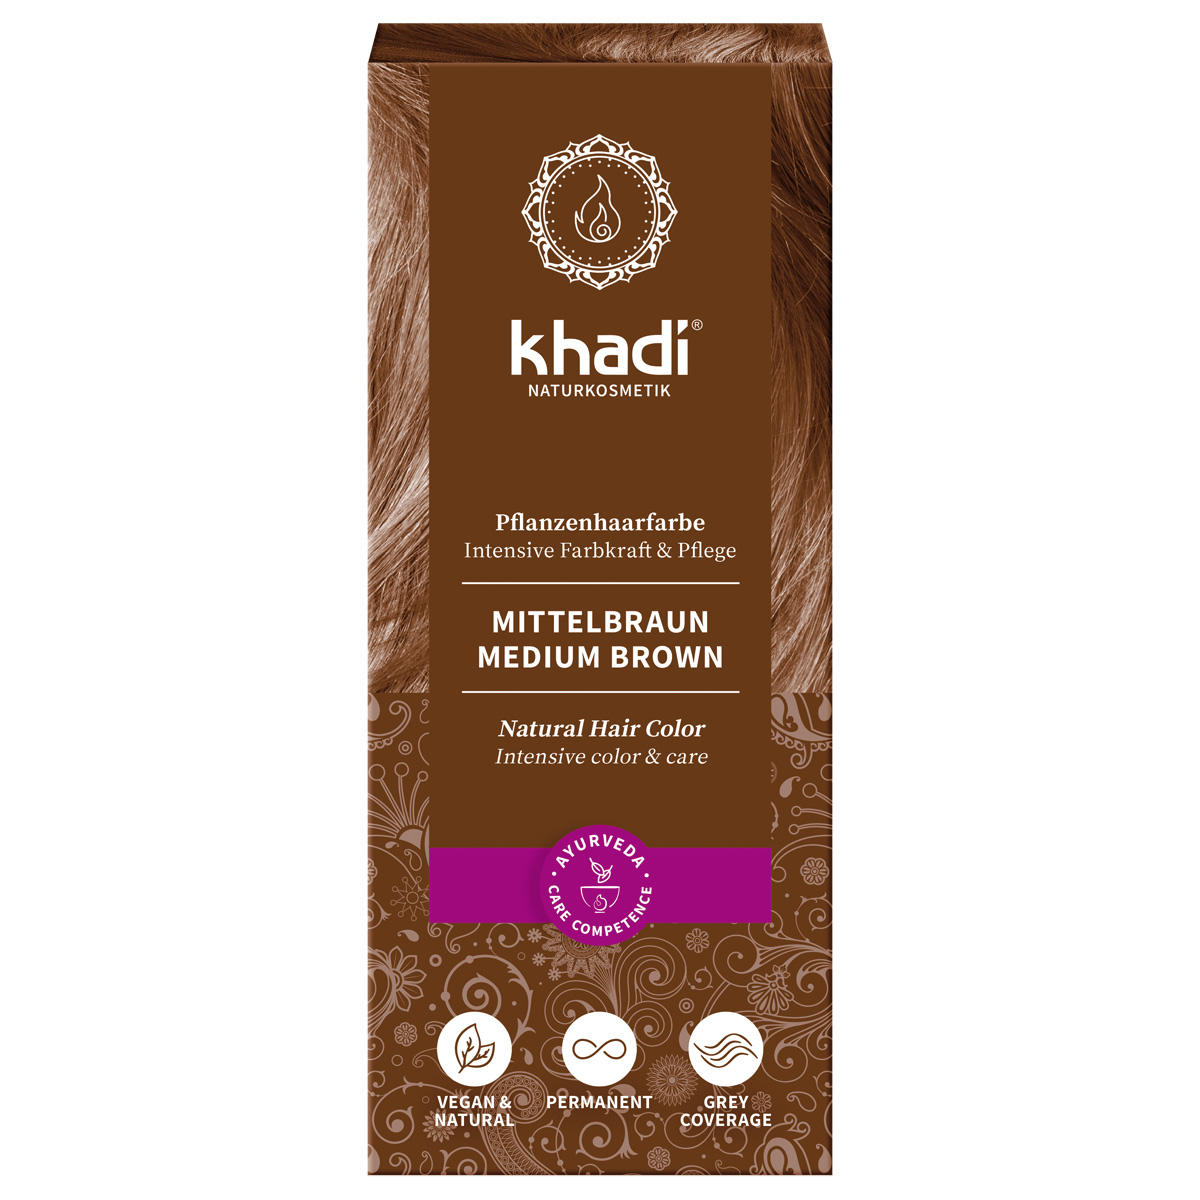 khadi Plant hair color medium brown 100 g - 1